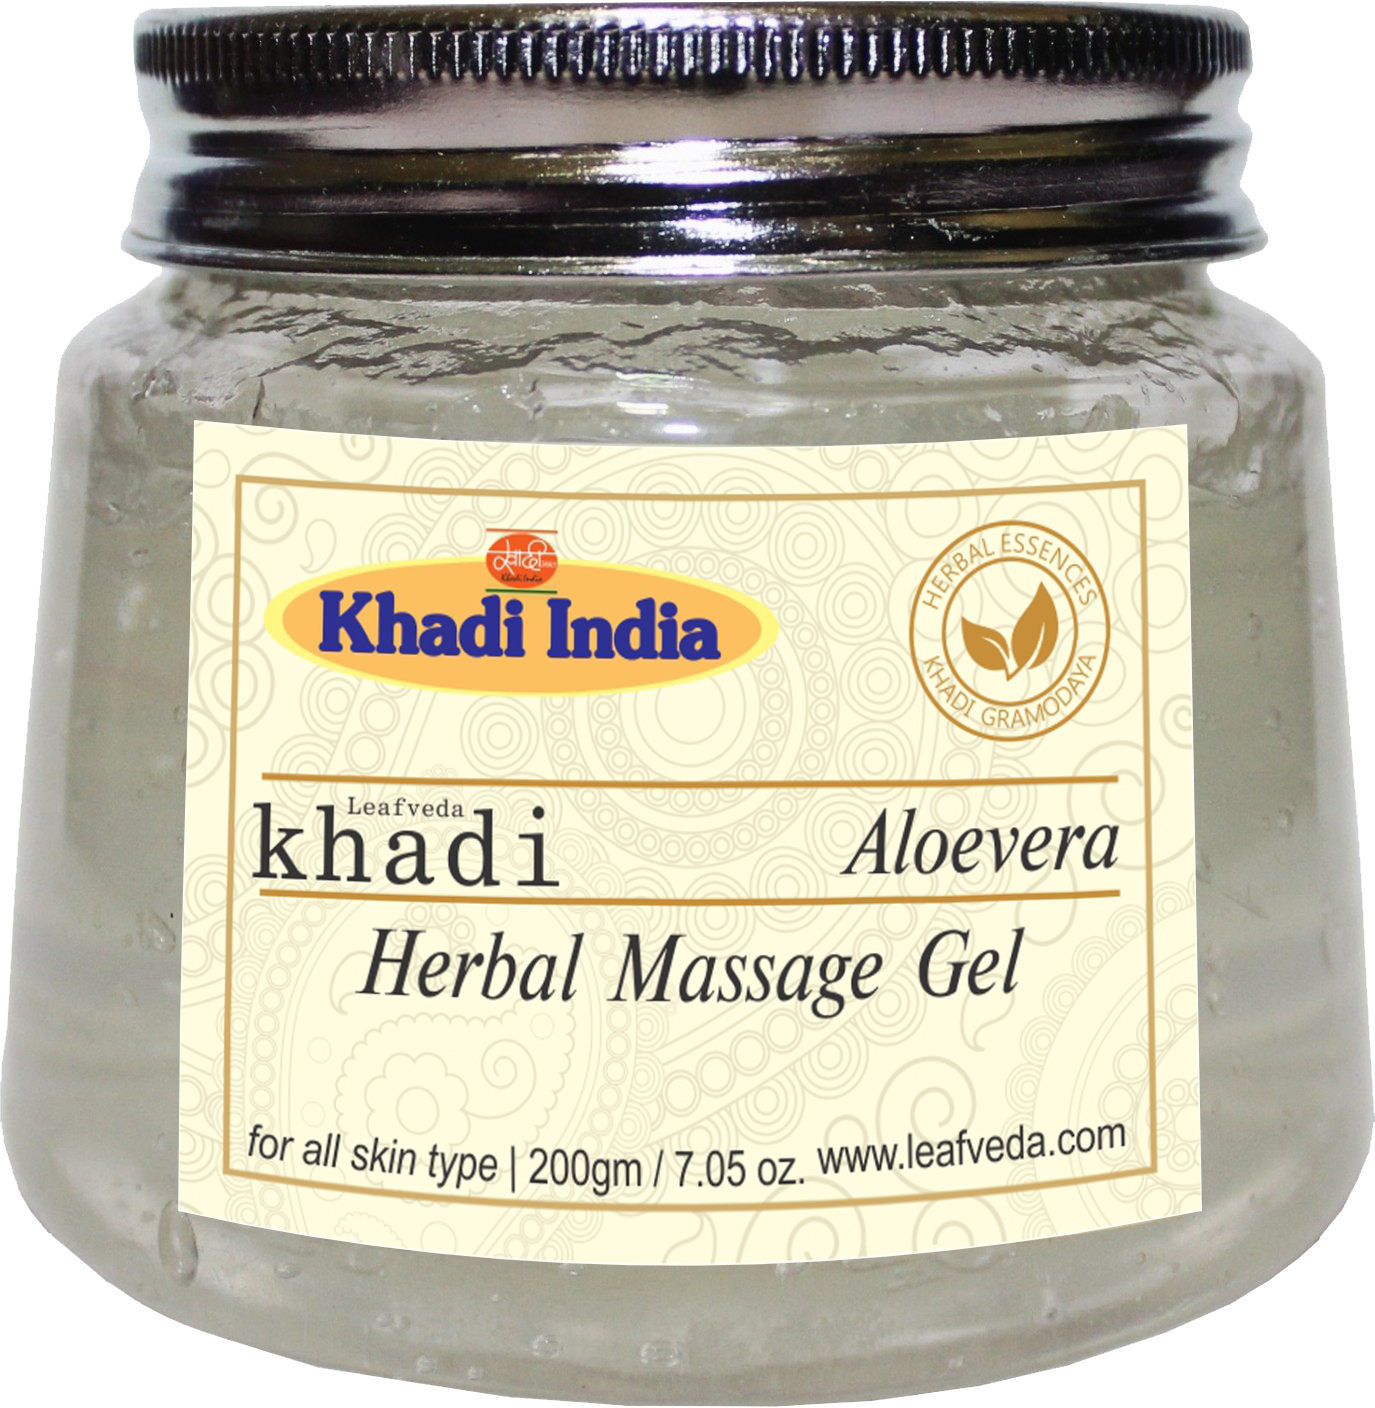 Buy Khadi Leafveda Aloe Vera Herbal Gel at Best Price Online